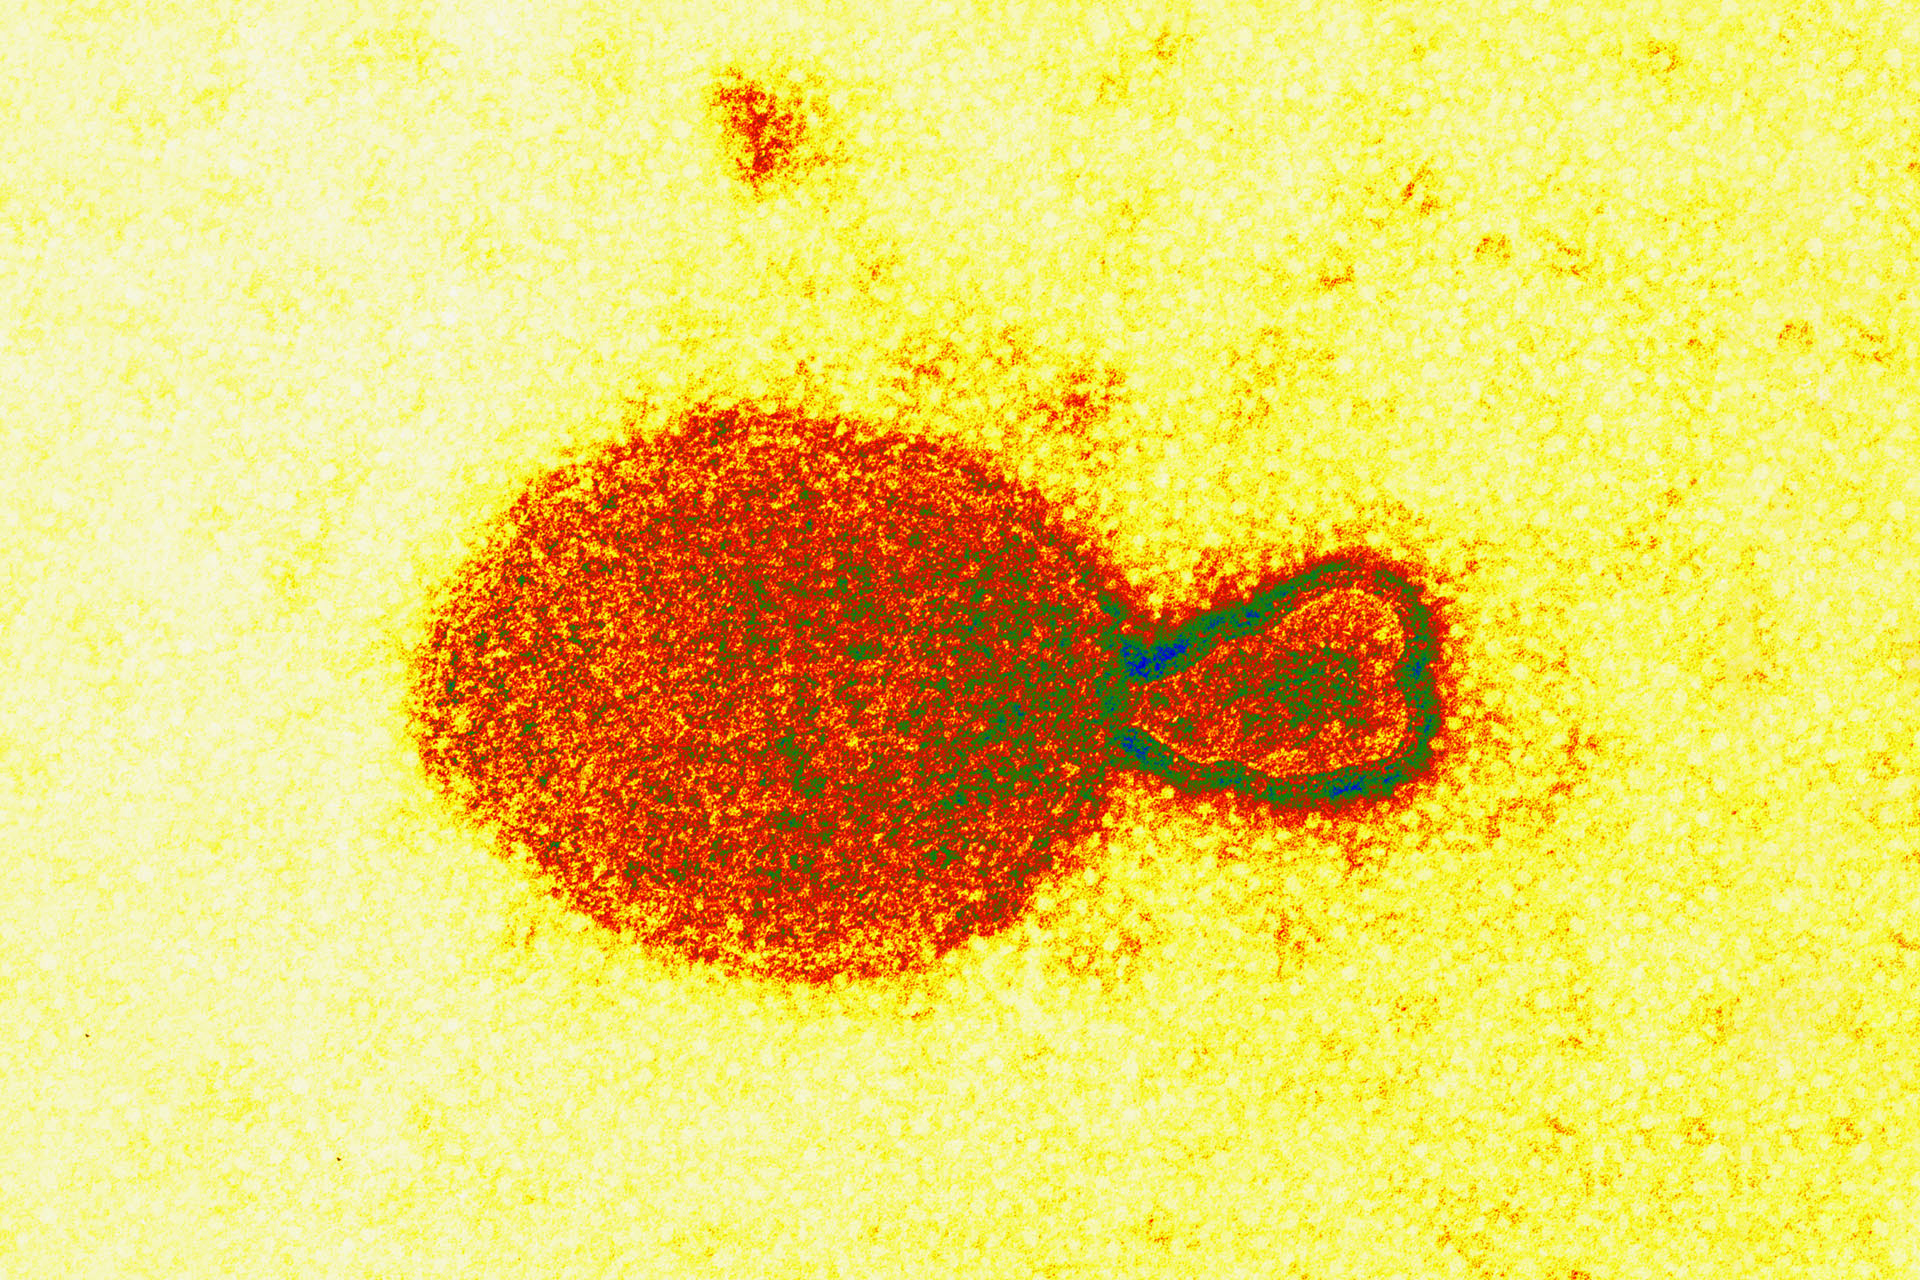 Что известно о генипавирусе «Ланъя»